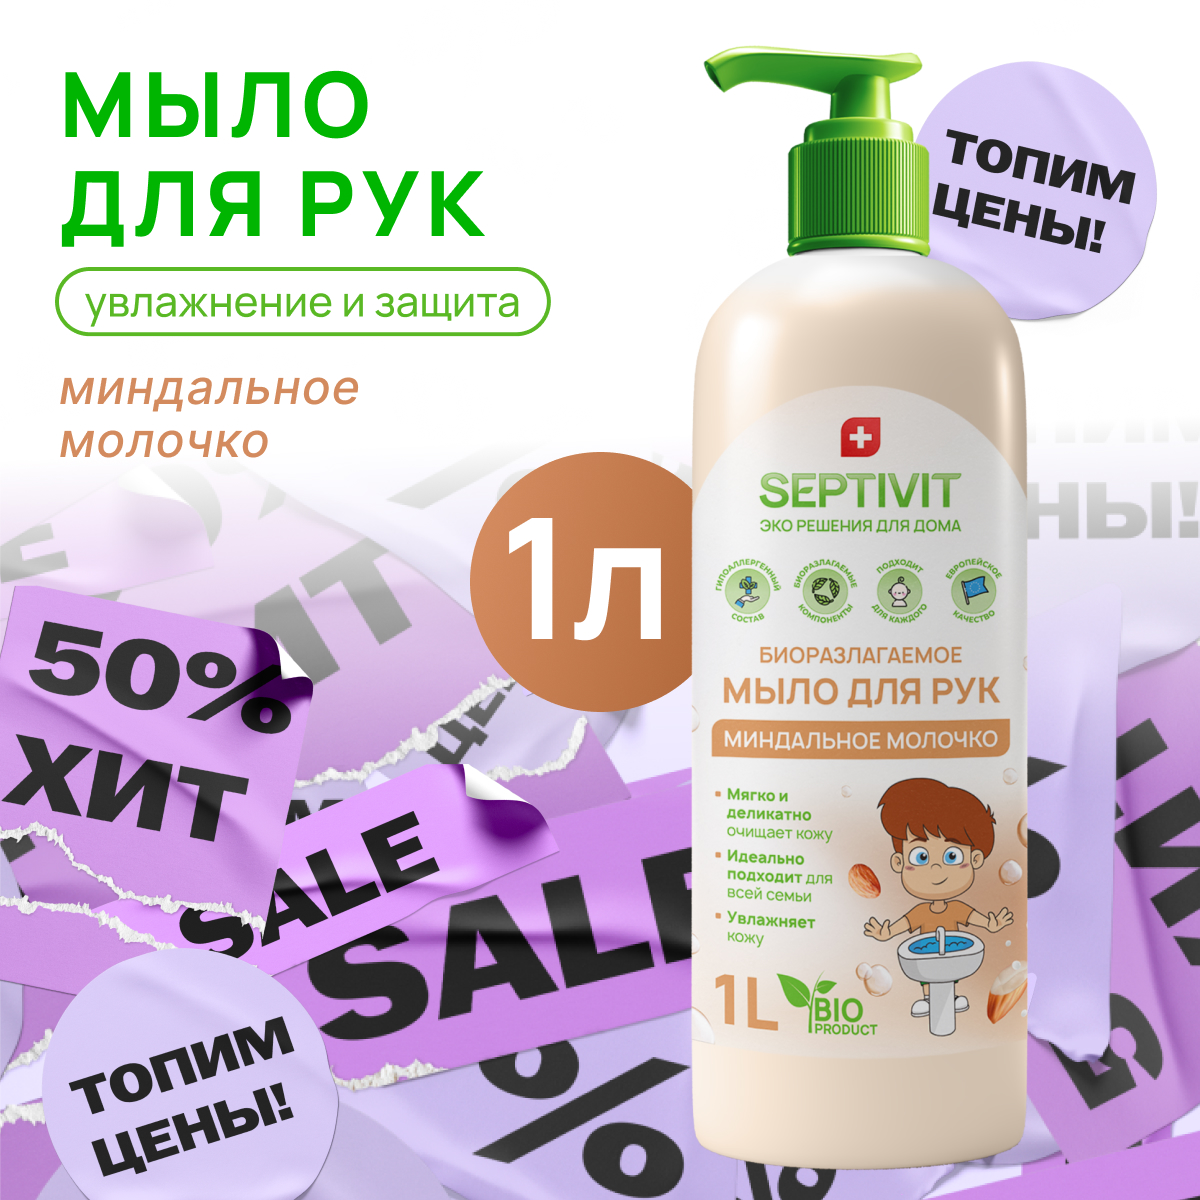 Жидкое мыло для рук Миндальное молочко Septivit Premium 1л жидкое мыло для рук без запаха septivit premium 1л